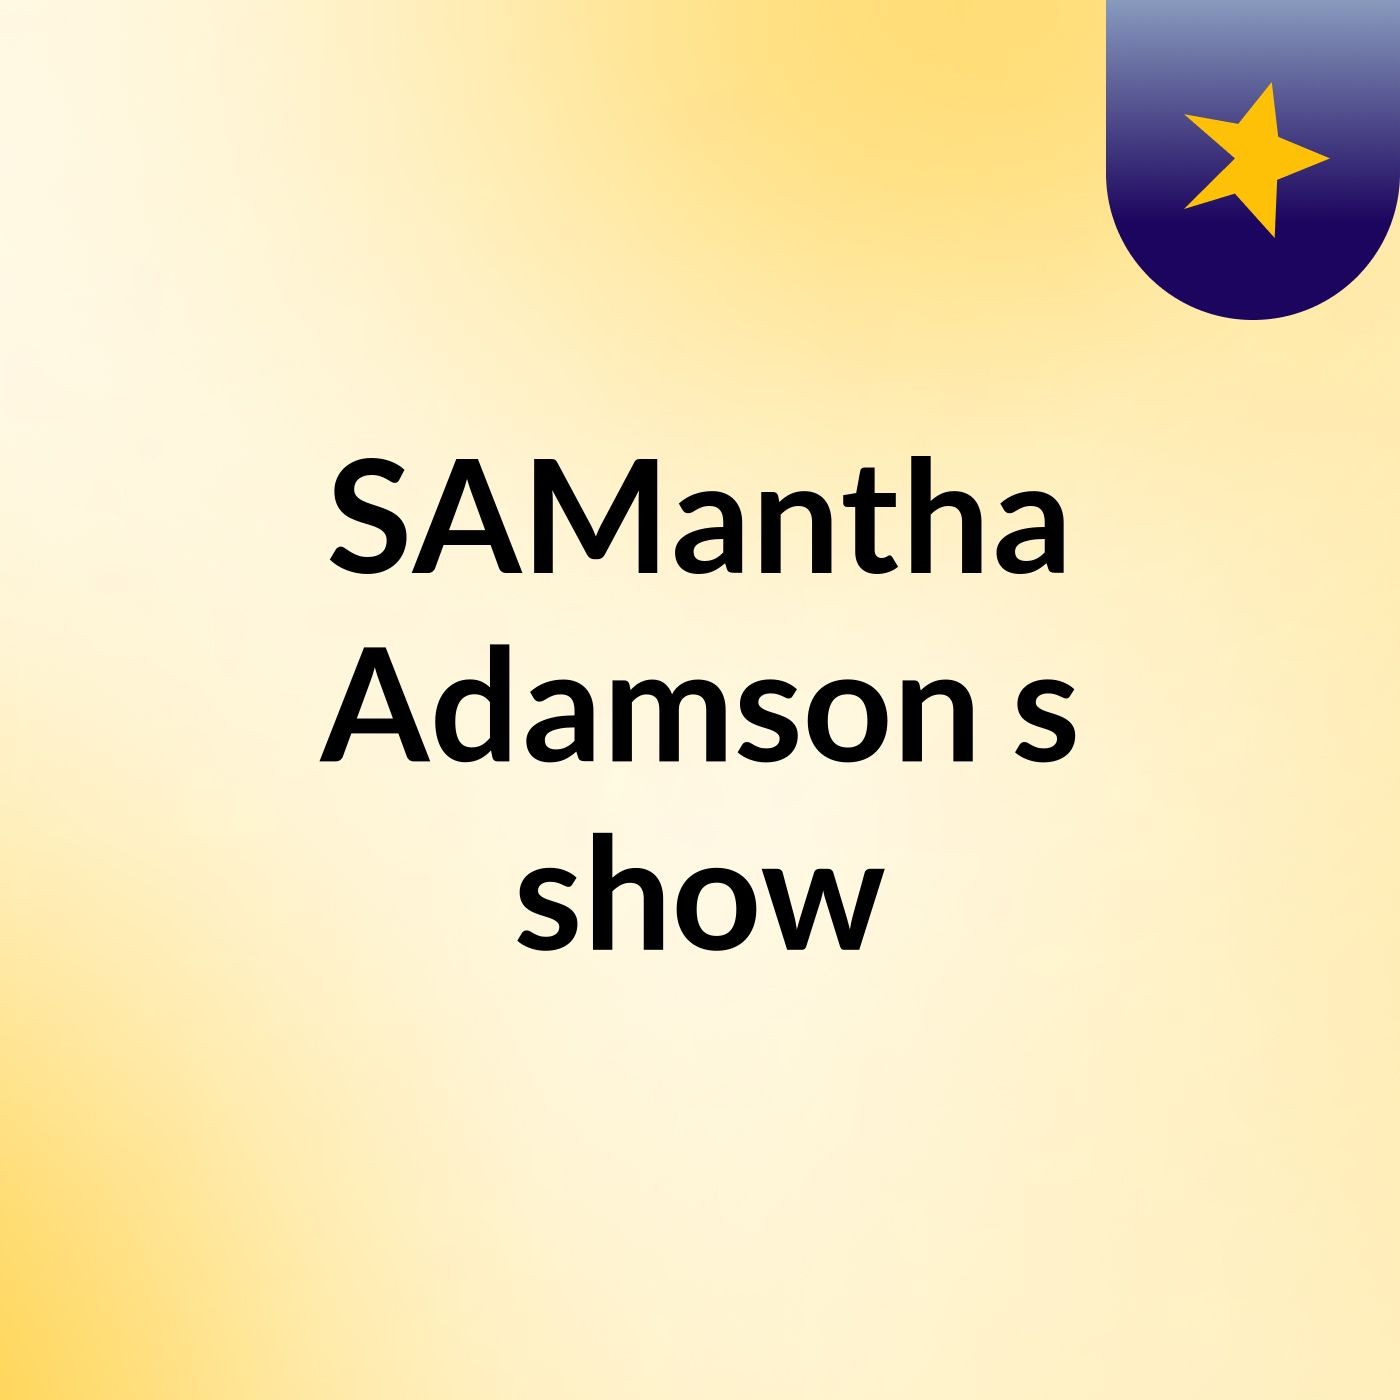 SAMantha Adamson's show